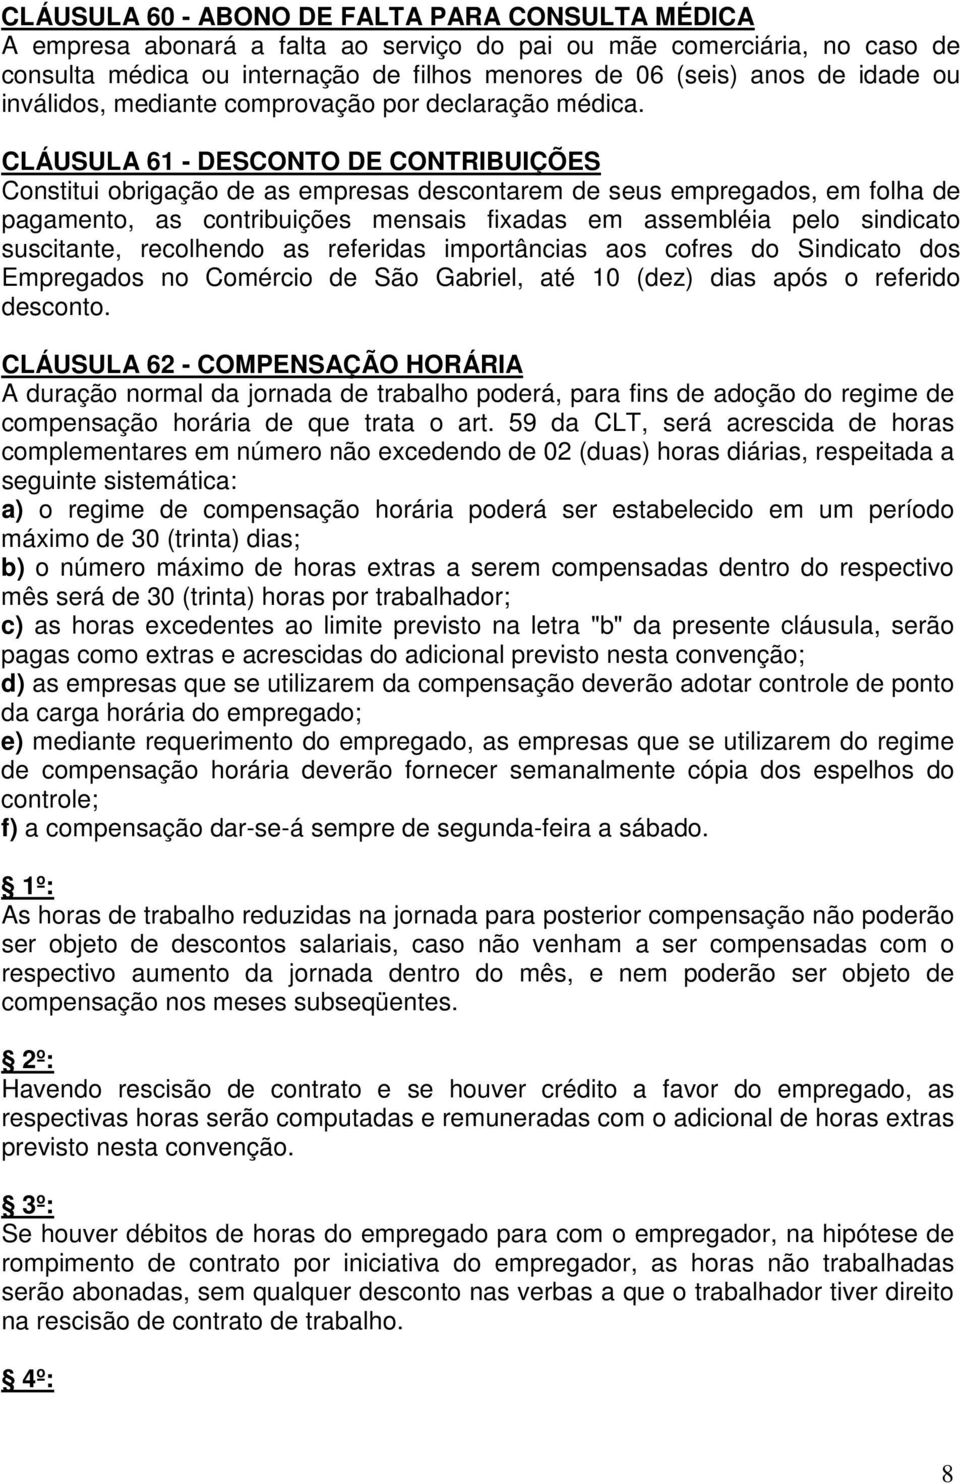 CLÁUSULA 61 - DESCONTO DE CONTRIBUIÇÕES Constitui obrigação de as empresas descontarem de seus empregados, em folha de pagamento, as contribuições mensais fixadas em assembléia pelo sindicato